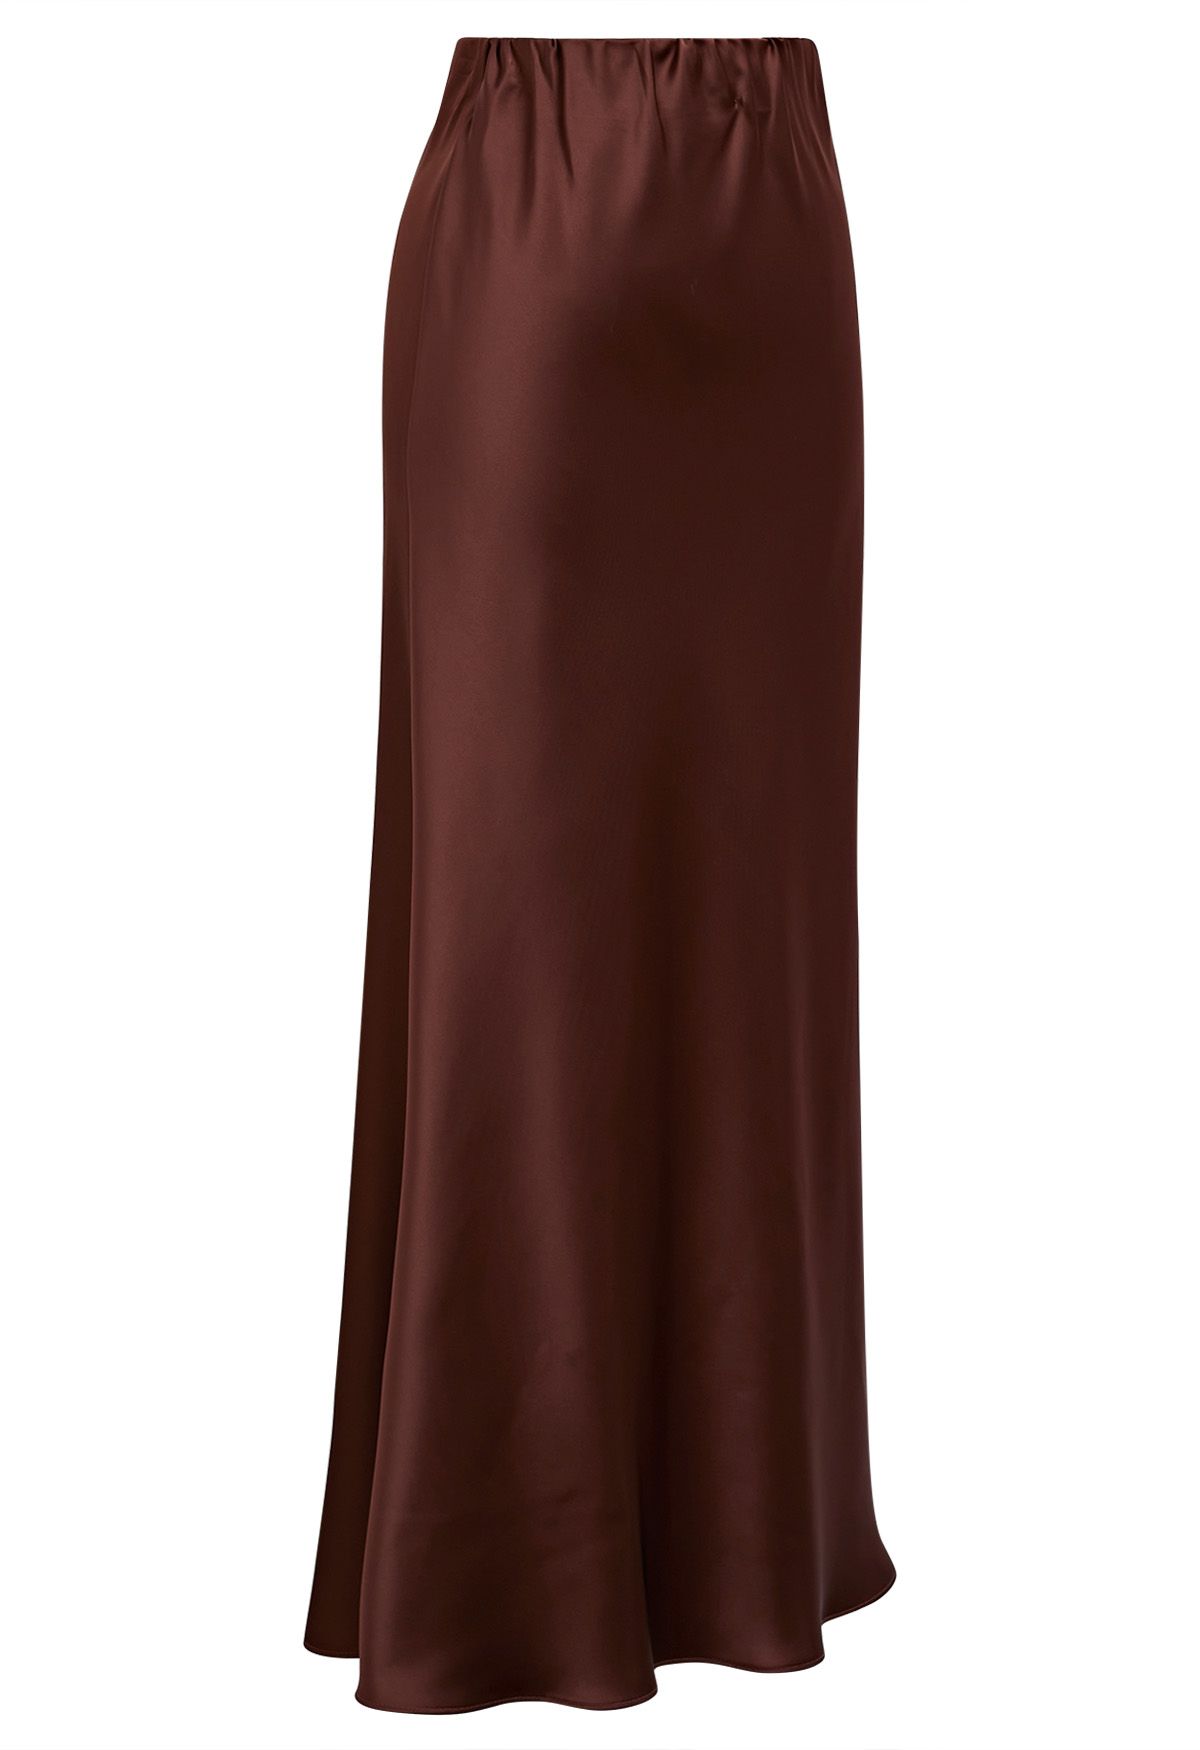 Falda larga de sirena con acabado satinado en color burdeos